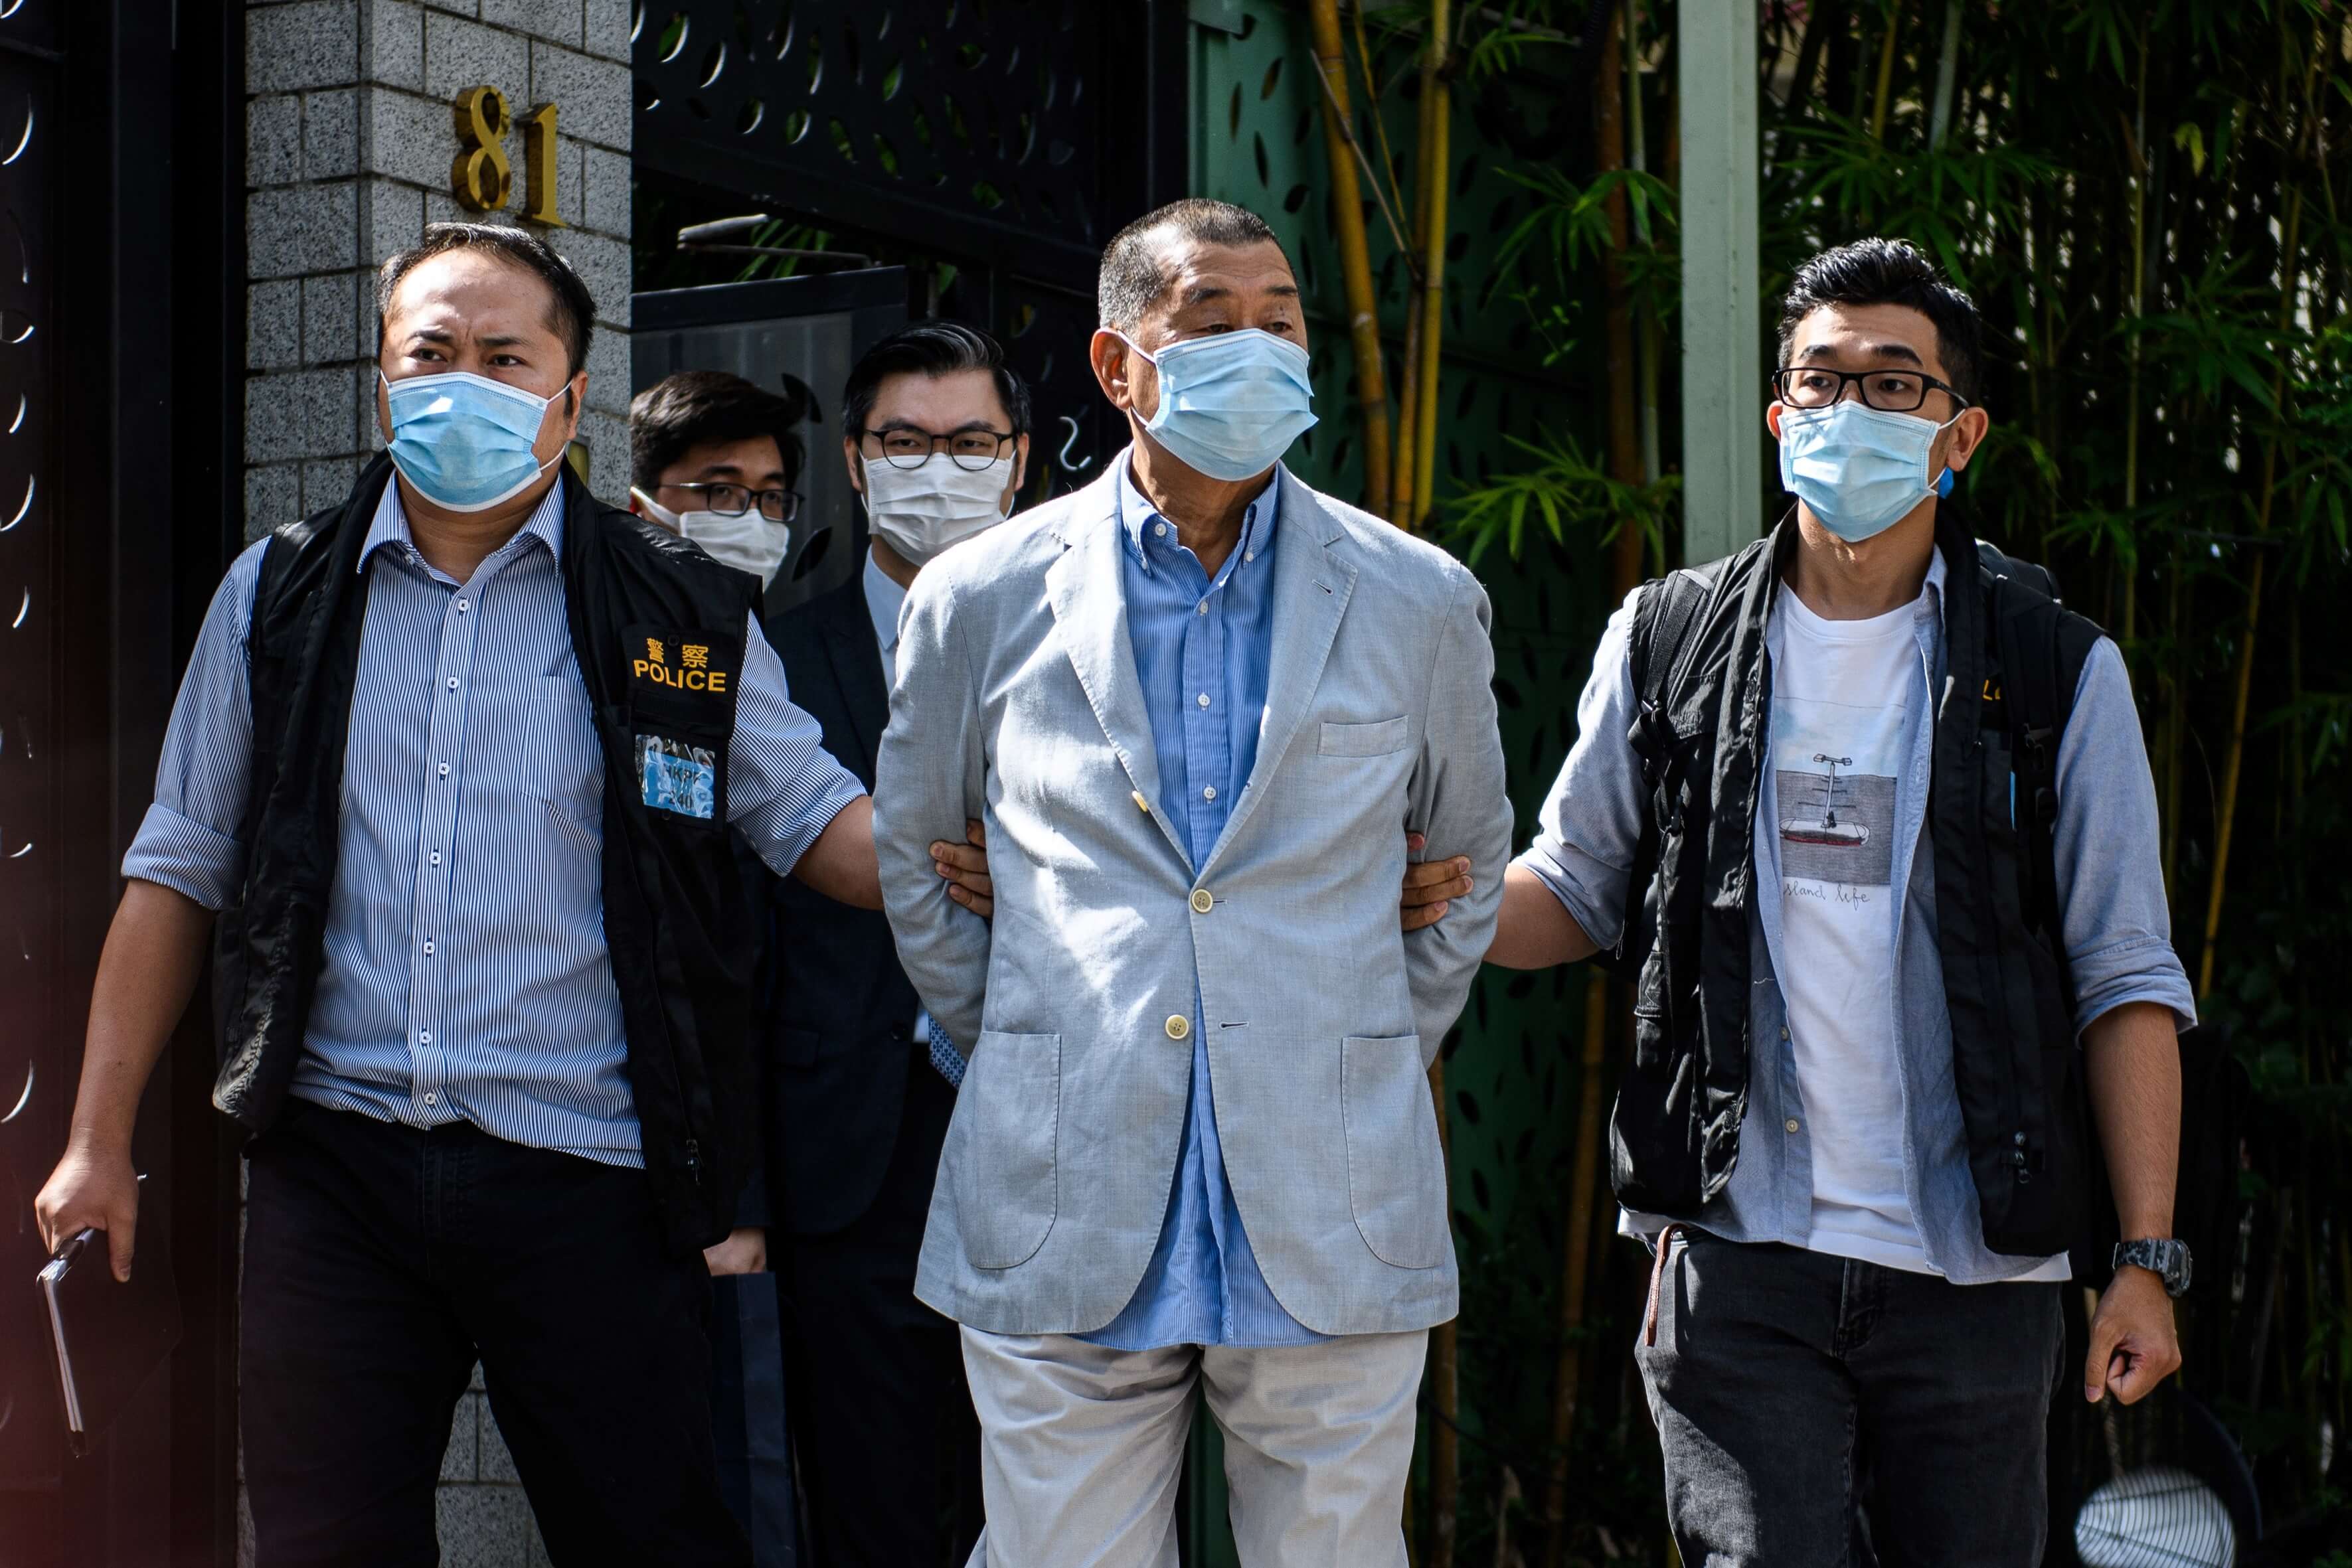 La police a conduit le magnat des médias pro-démocratie de Hong Kong Jimmy Lai, 72 ans, loin de son domicile après son arrestation en vertu de la nouvelle loi sur la sécurité nationale à Hong Kong le 10 août 2020. - Le magnat des médias pro-démocratie de Hong Kong, Jimmy Lai, a été arrêté en vertu d'une nouvelle loi sur la sécurité nationale le 10 août et la police a effectué une descente dans les bureaux de son journal dans le cadre d'une répression accrue de la dissidence dans cette ville chinoise agitée. Traduit avec www.DeepL.com/Translator (version gratuite)